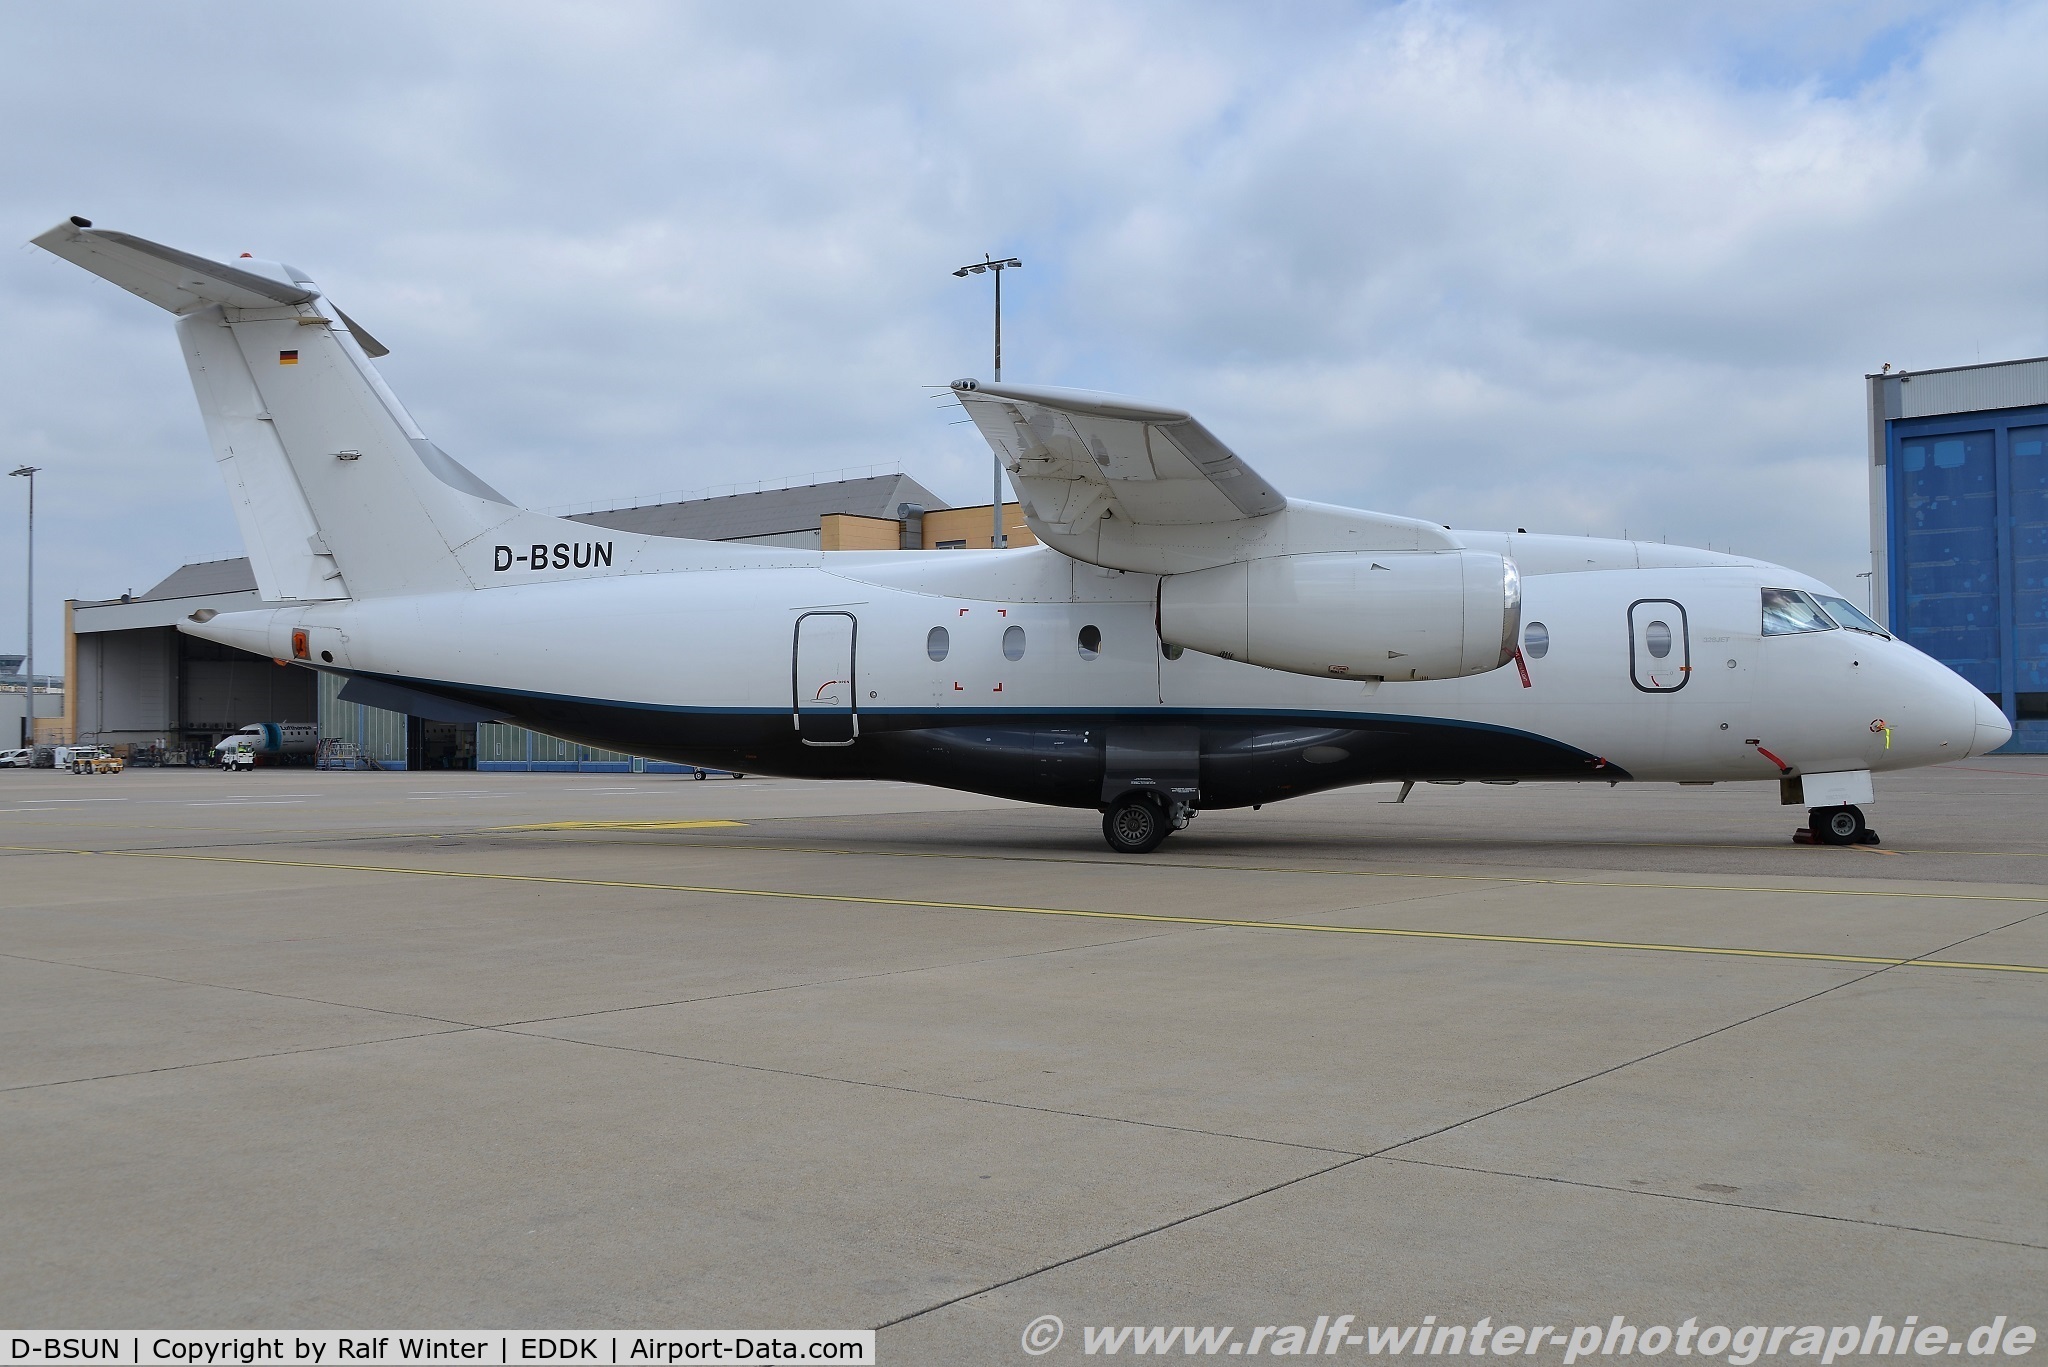 D-BSUN, 2000 Fairchild Dornier 328-300 328JET C/N 3147, Dornier 328-310 JET - EZ SUS Sun Air of Scandinavia - 3147 - D-BSUN - 22.05.2019 - CGN